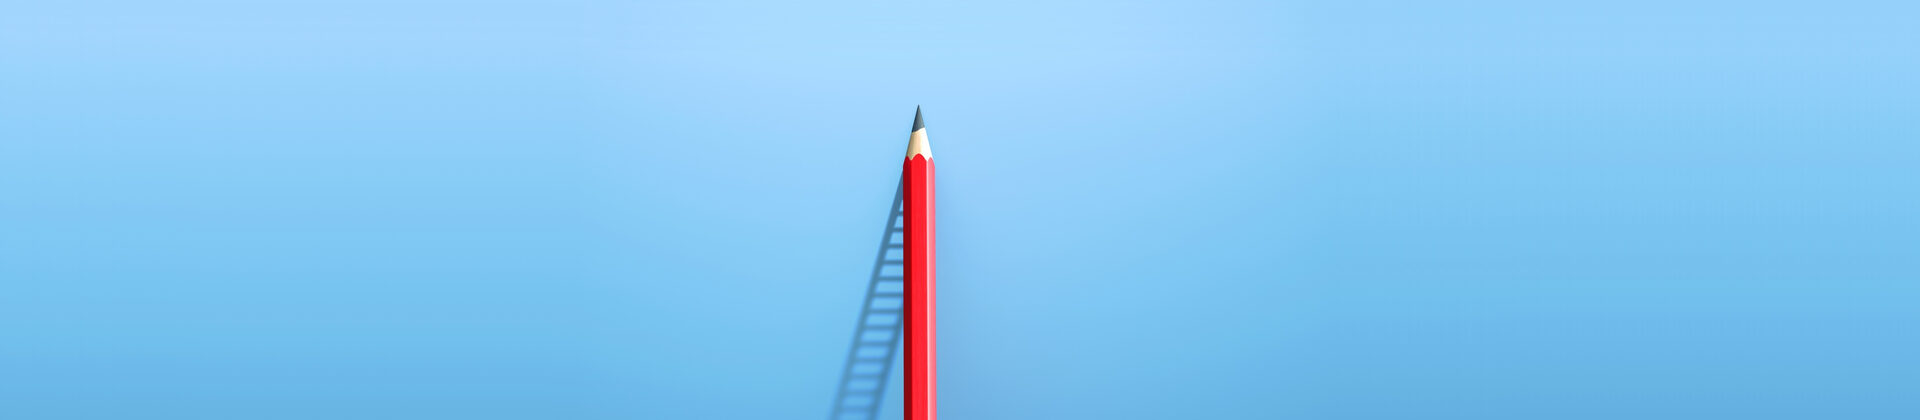 Roter Stift steht an einer Wand und wirft den Schatten einer Leiter